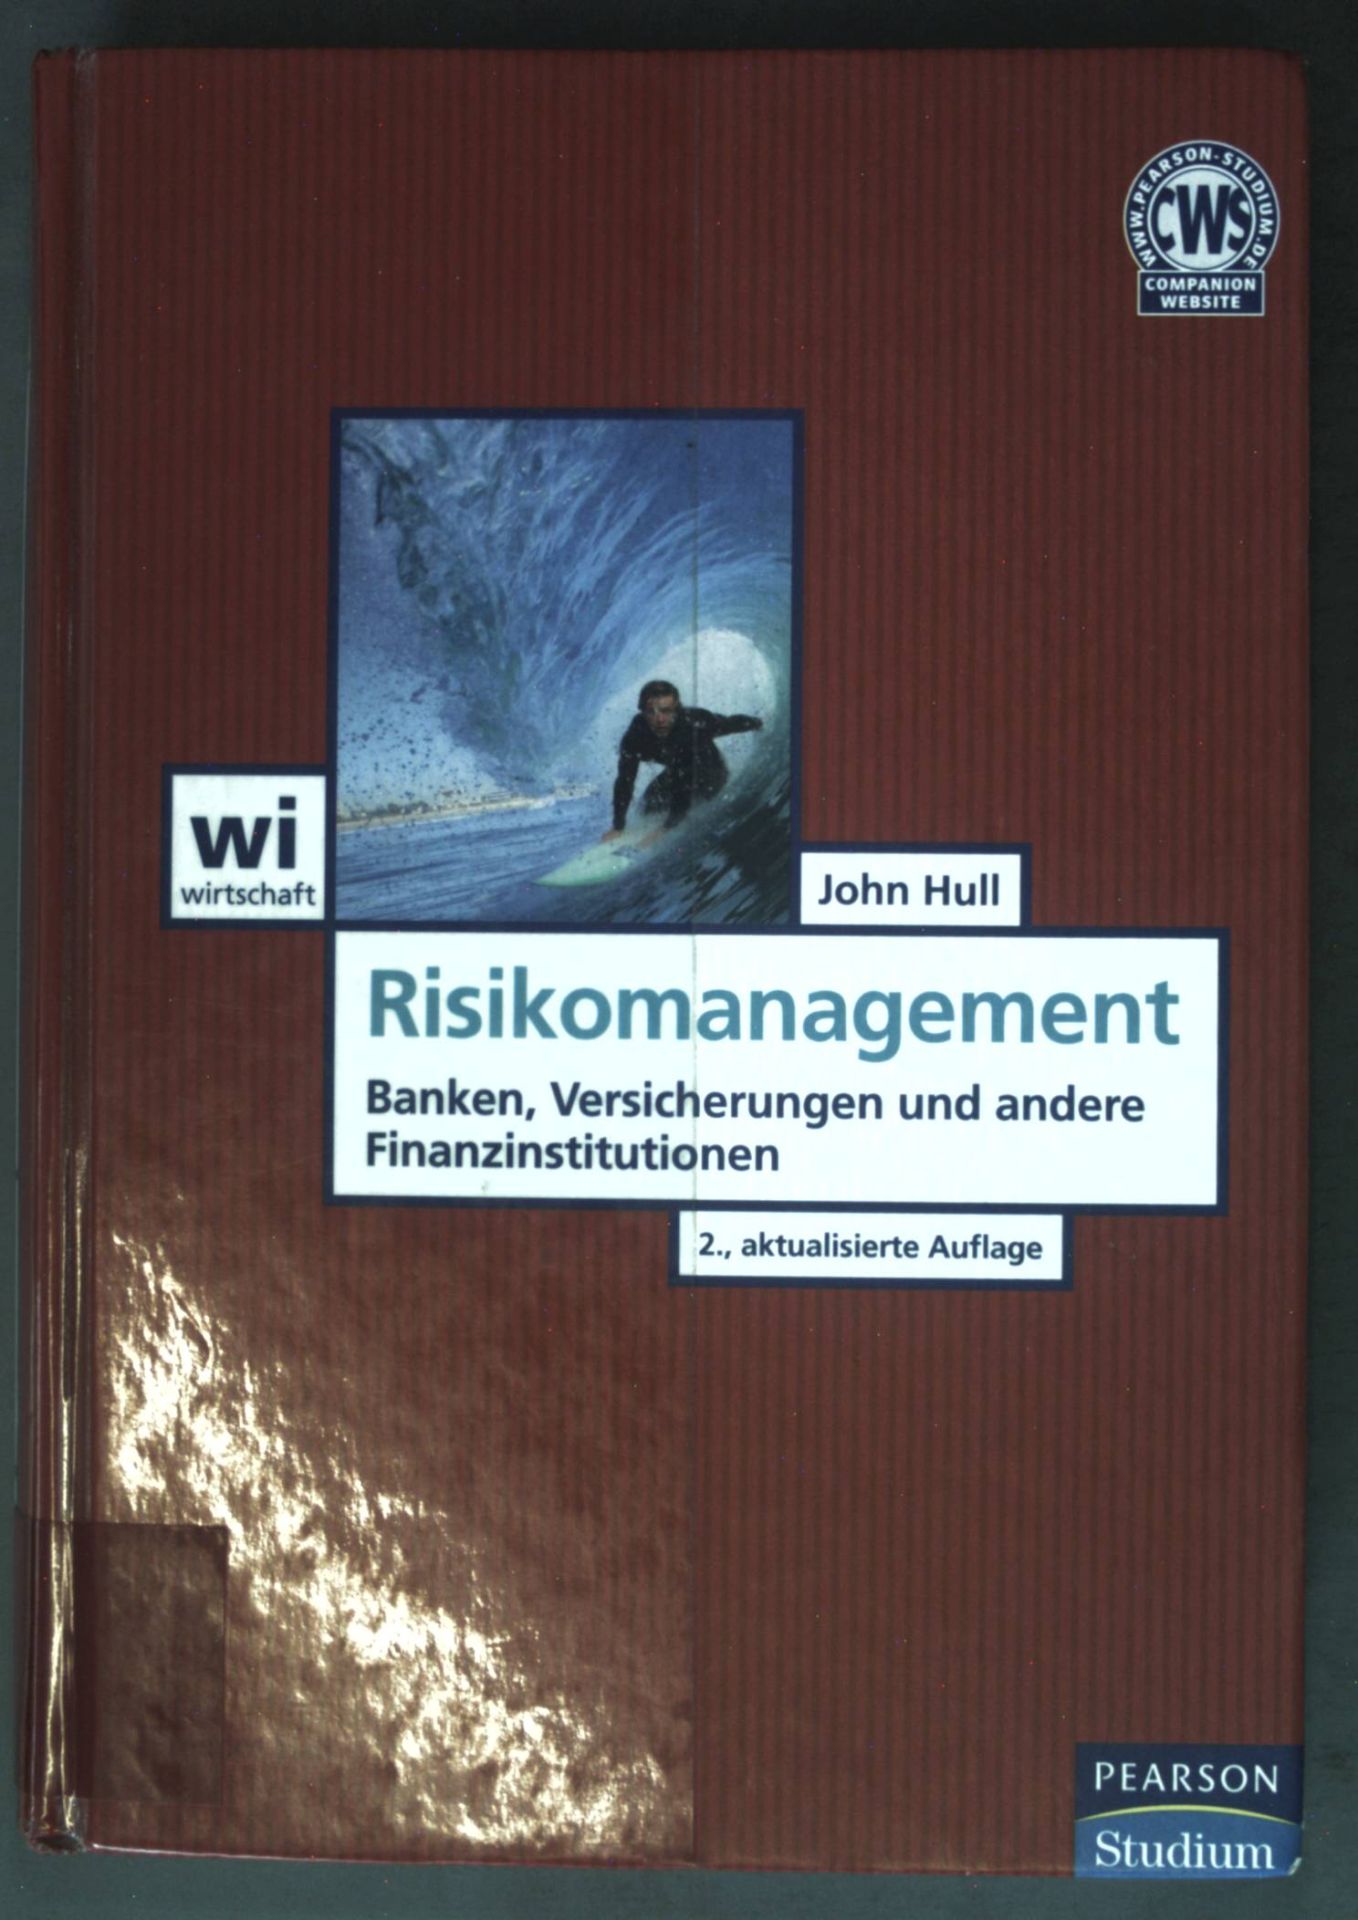 Risikomanagement: Banken, Versicherungen und andere Finanzinstitutionen; Pearson Studium - Economic BWL - Hull, Prof. Dr. John C.